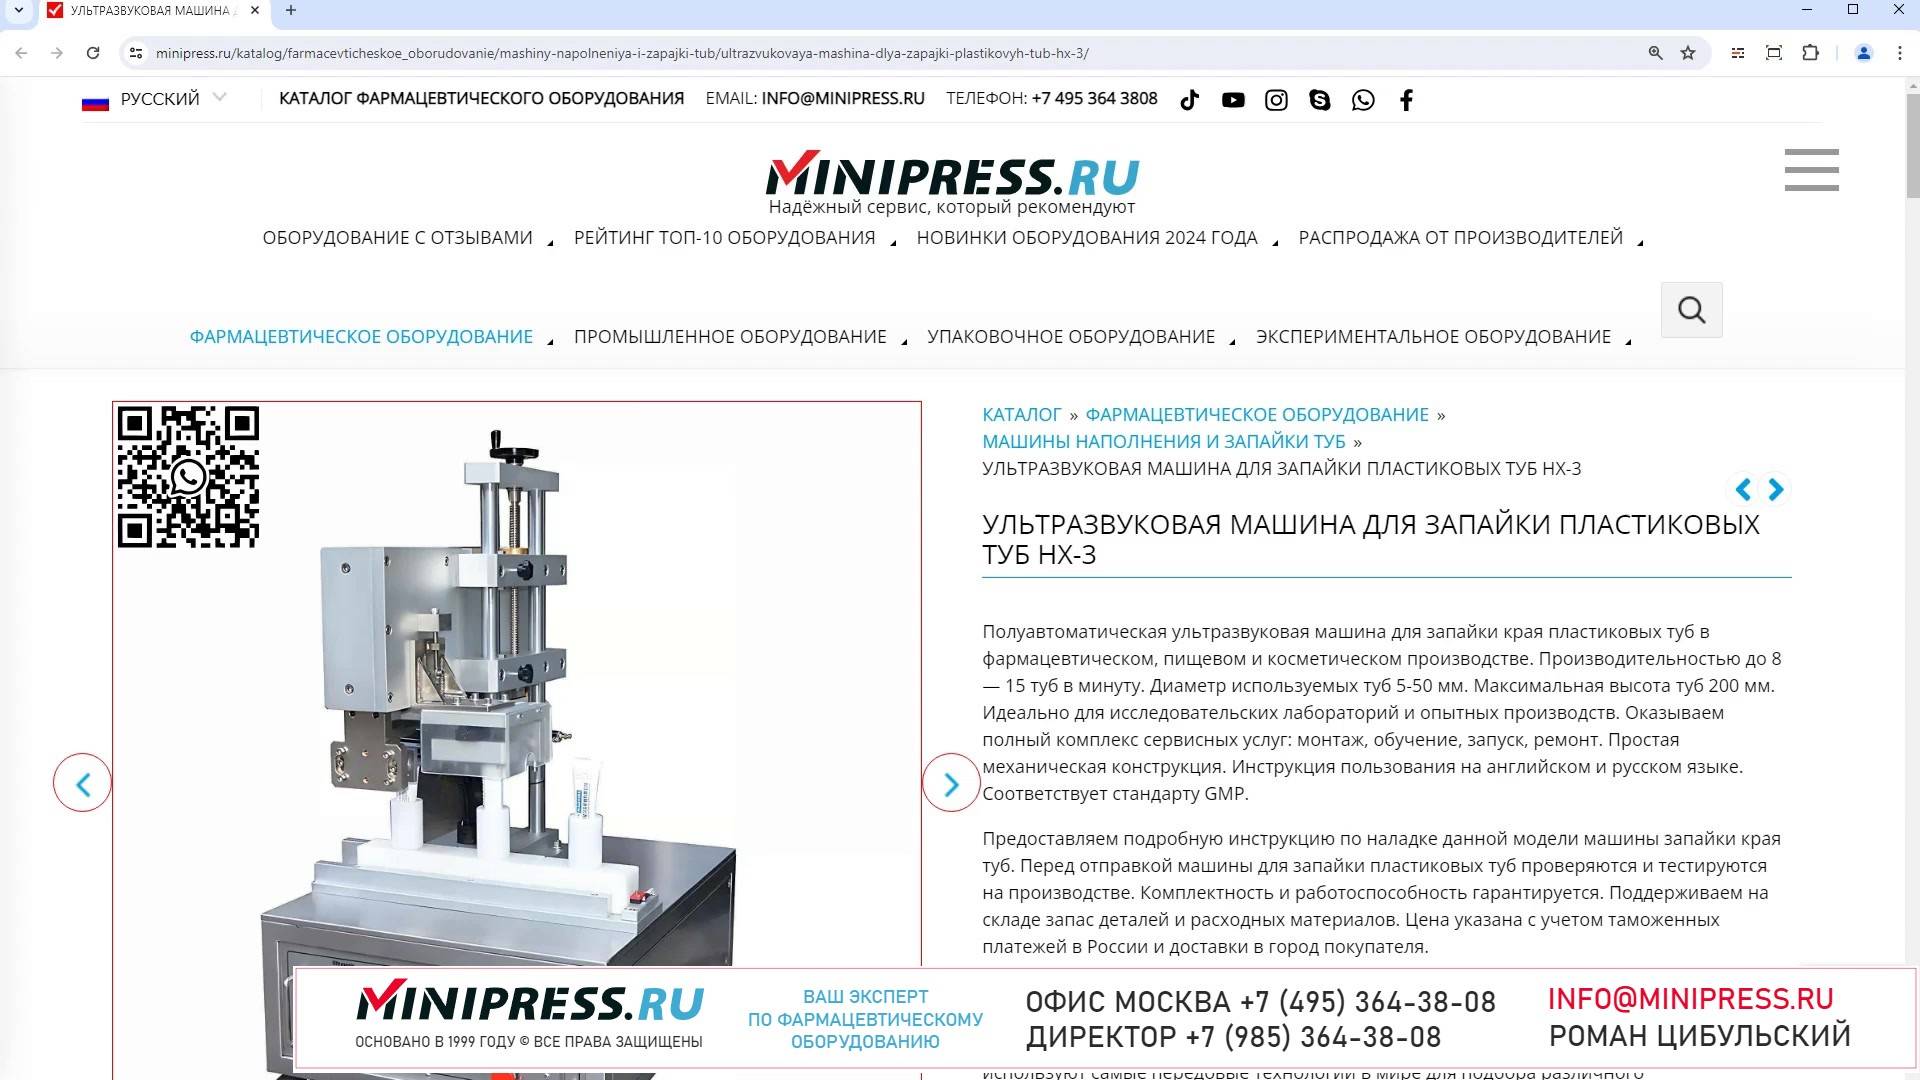 Minipress.ru Ультразвуковая машина для запайки пластиковых туб HX-3